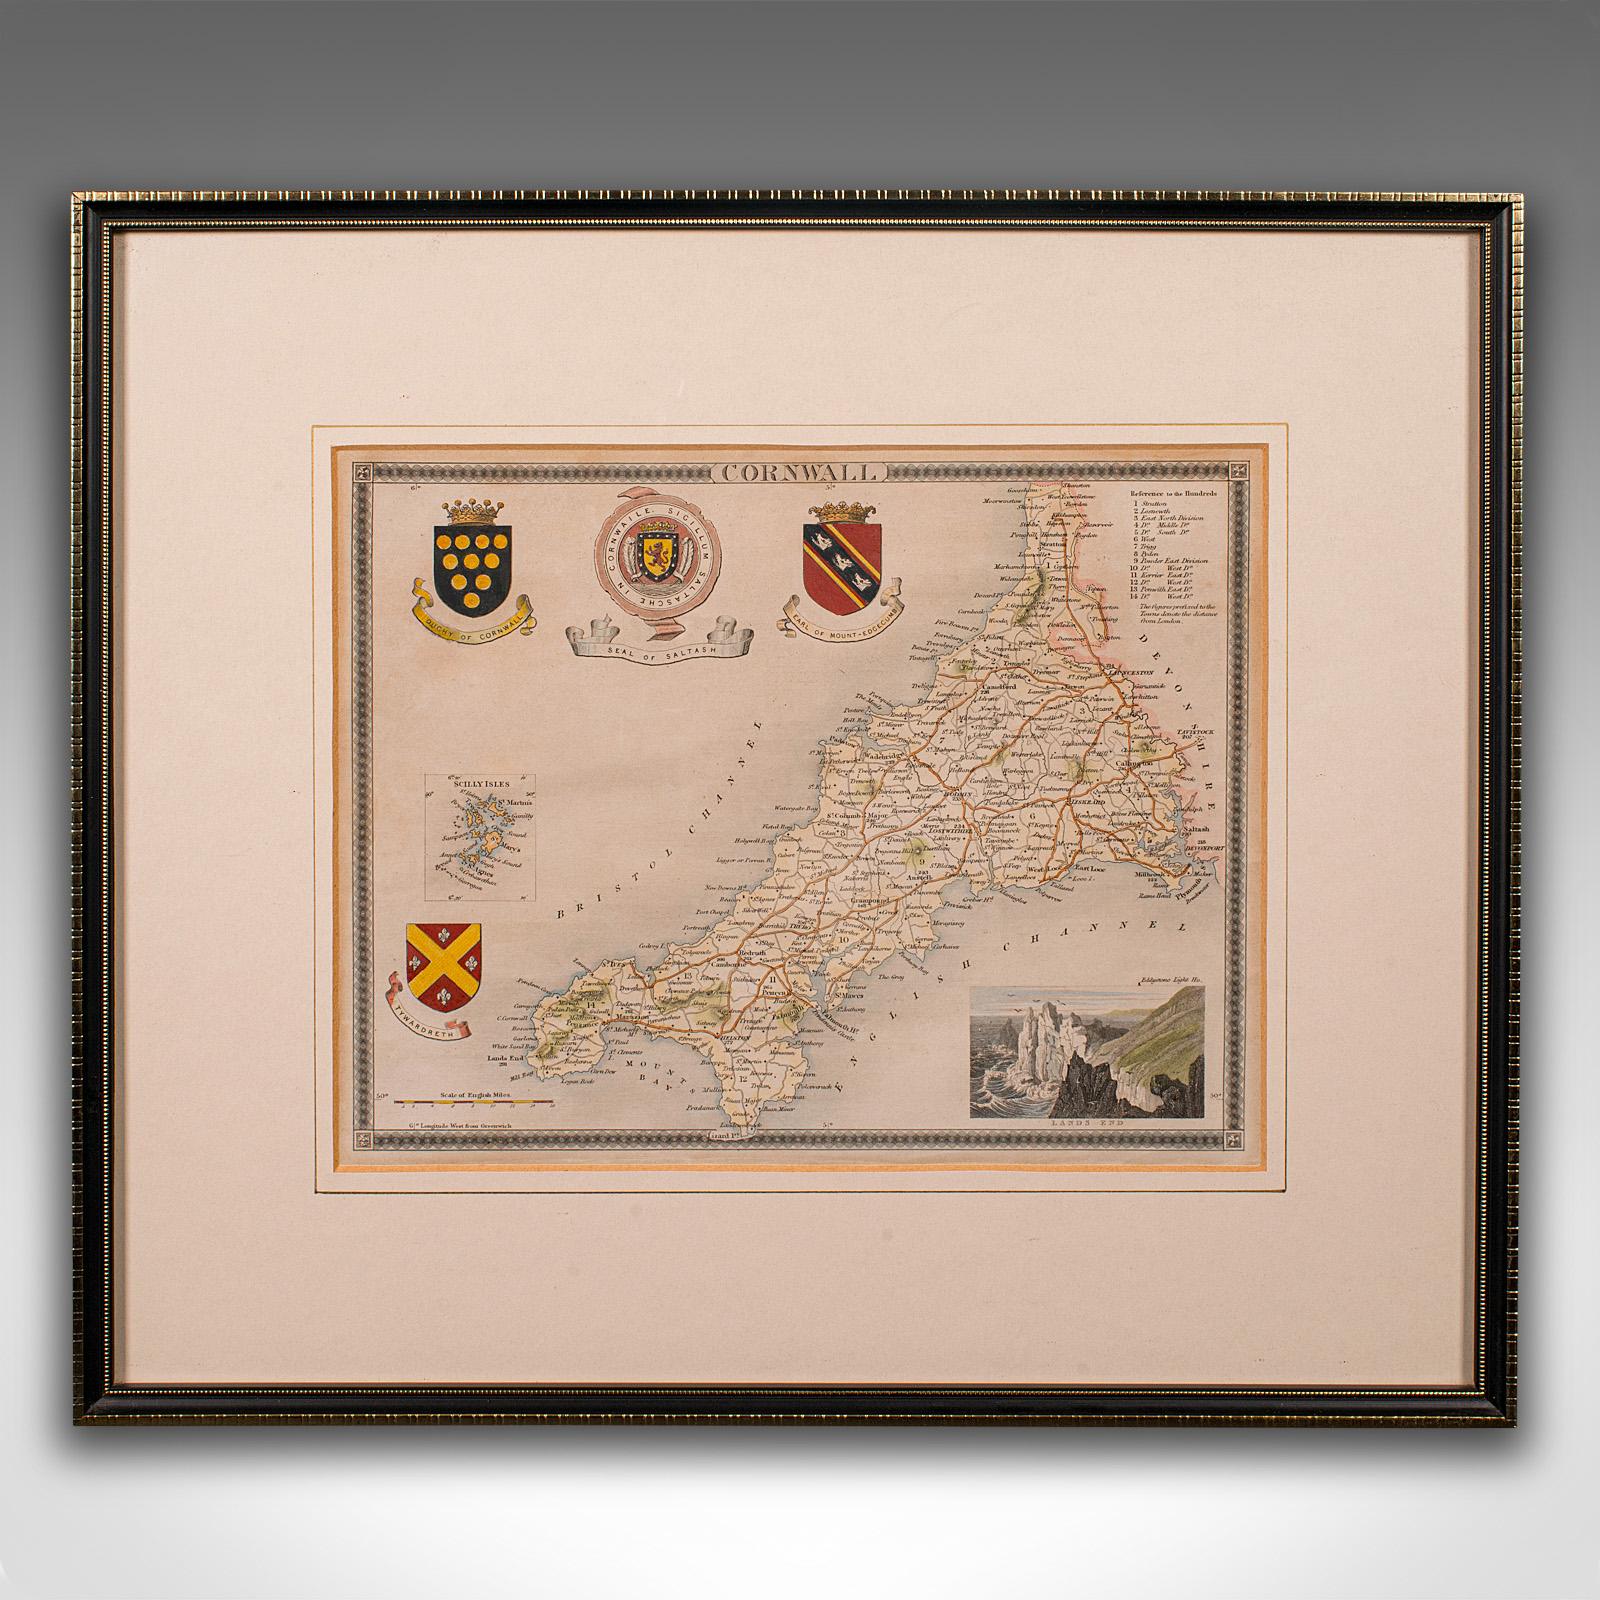 Dies ist eine antike lithografische Karte des Herzogtums Cornwall. Ein englischer, gerahmter Atlasstich von kartografischem Interesse aus dem frühen 19. Jahrhundert und später.

Hervorragende Lithografie von Conrwall und seiner Grafschaft, perfekt